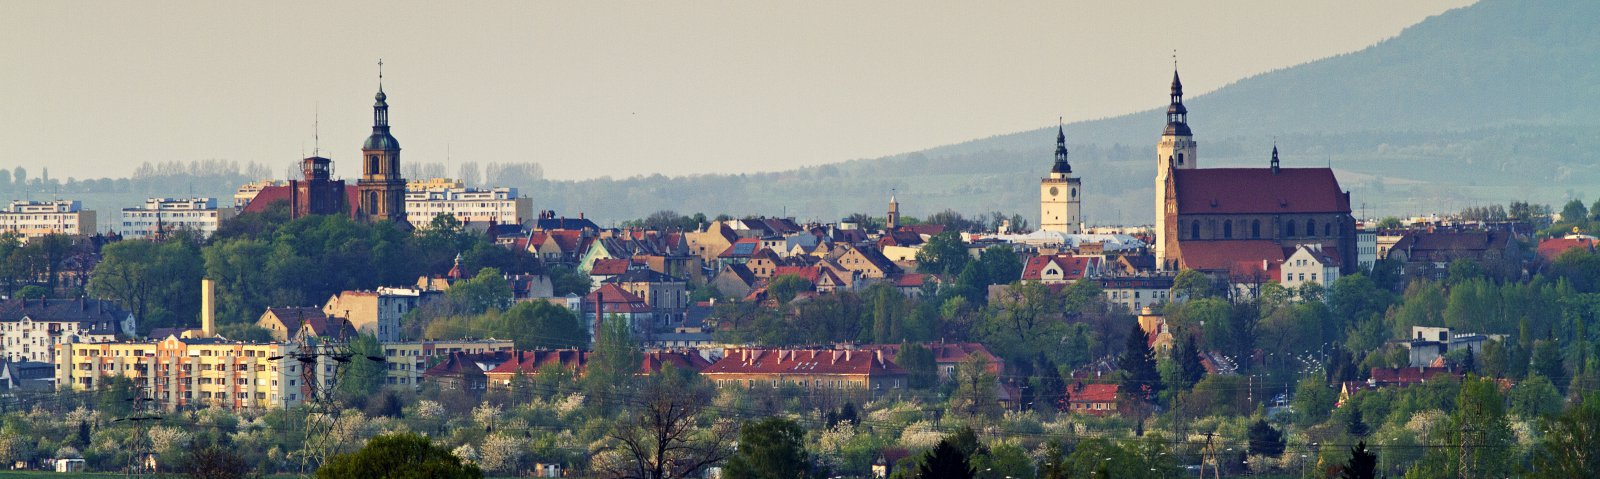 Panorama miasta na tle gór, wyrózniające się wielkością dwa kościoły z wieżami